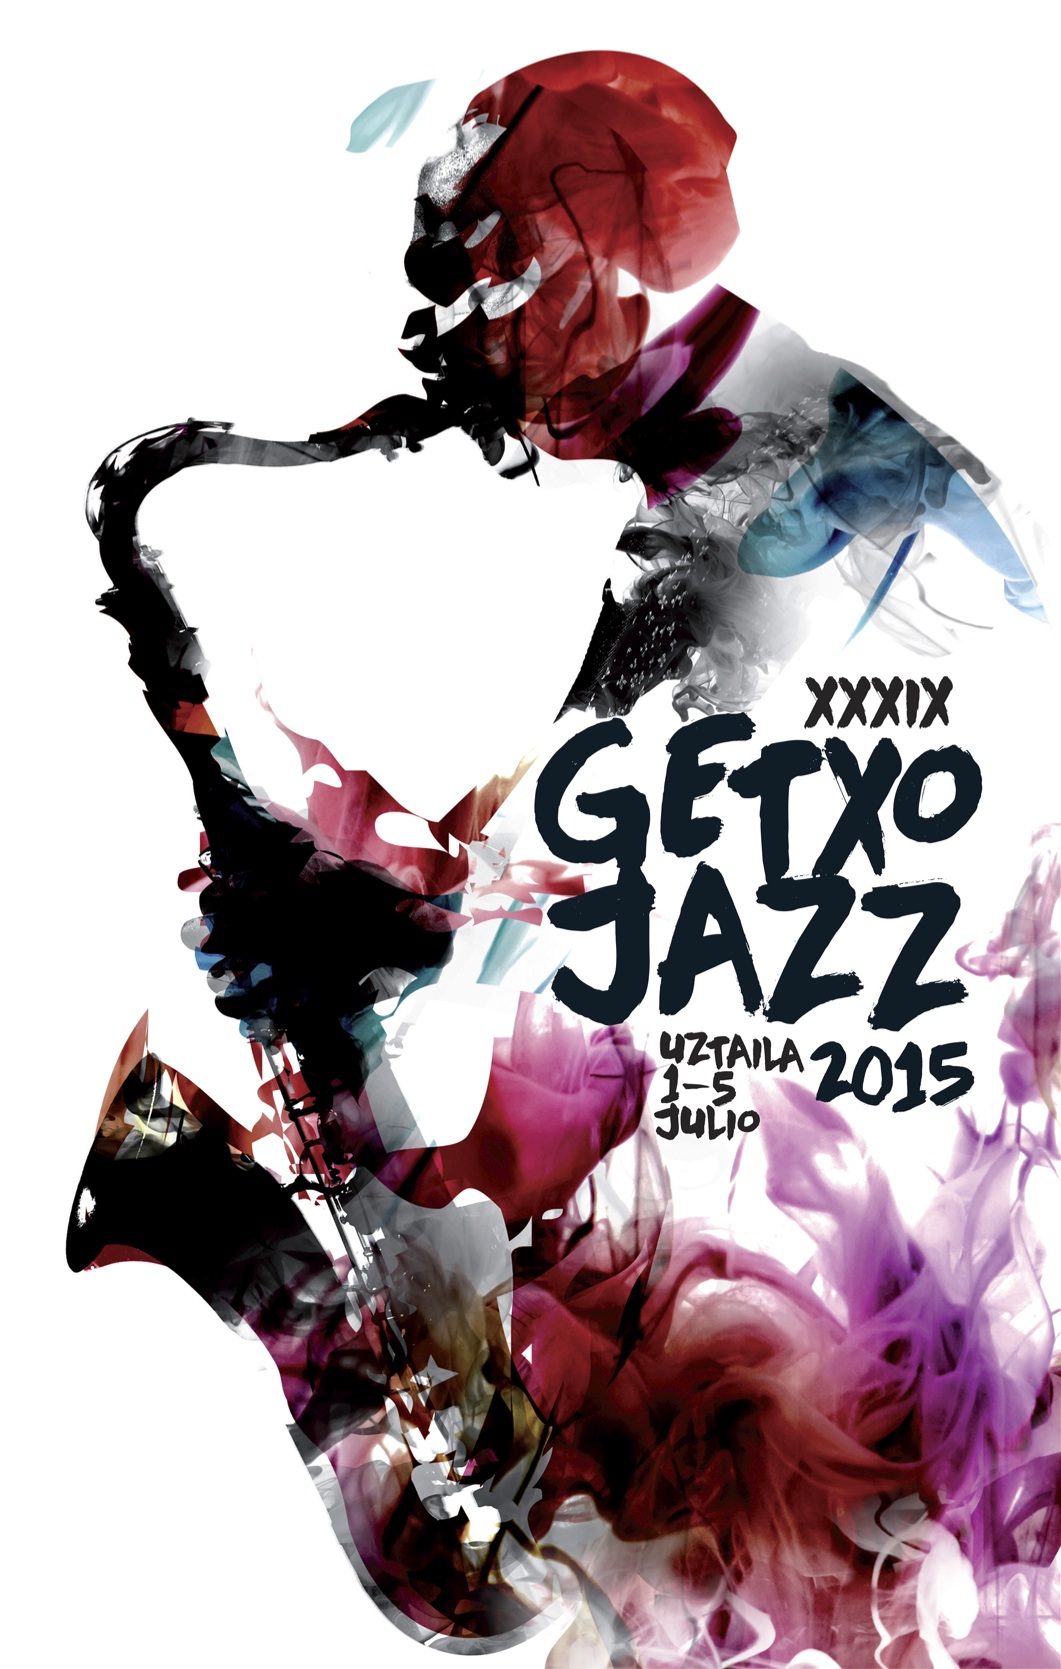 Getxoko Jazzaldia 2015